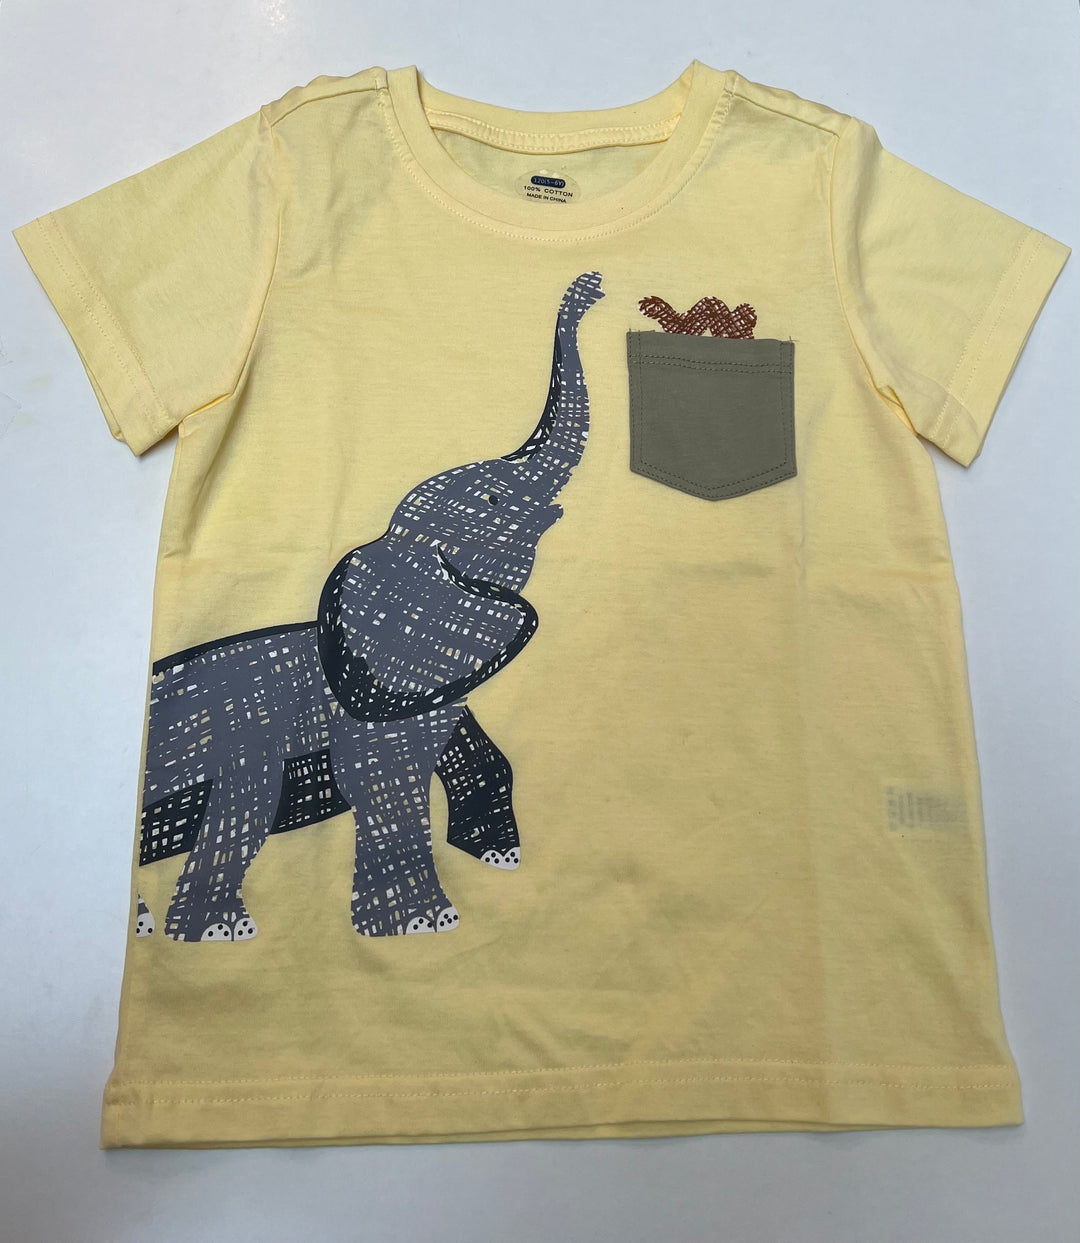 Elephant Pocket Shirt and Short Set